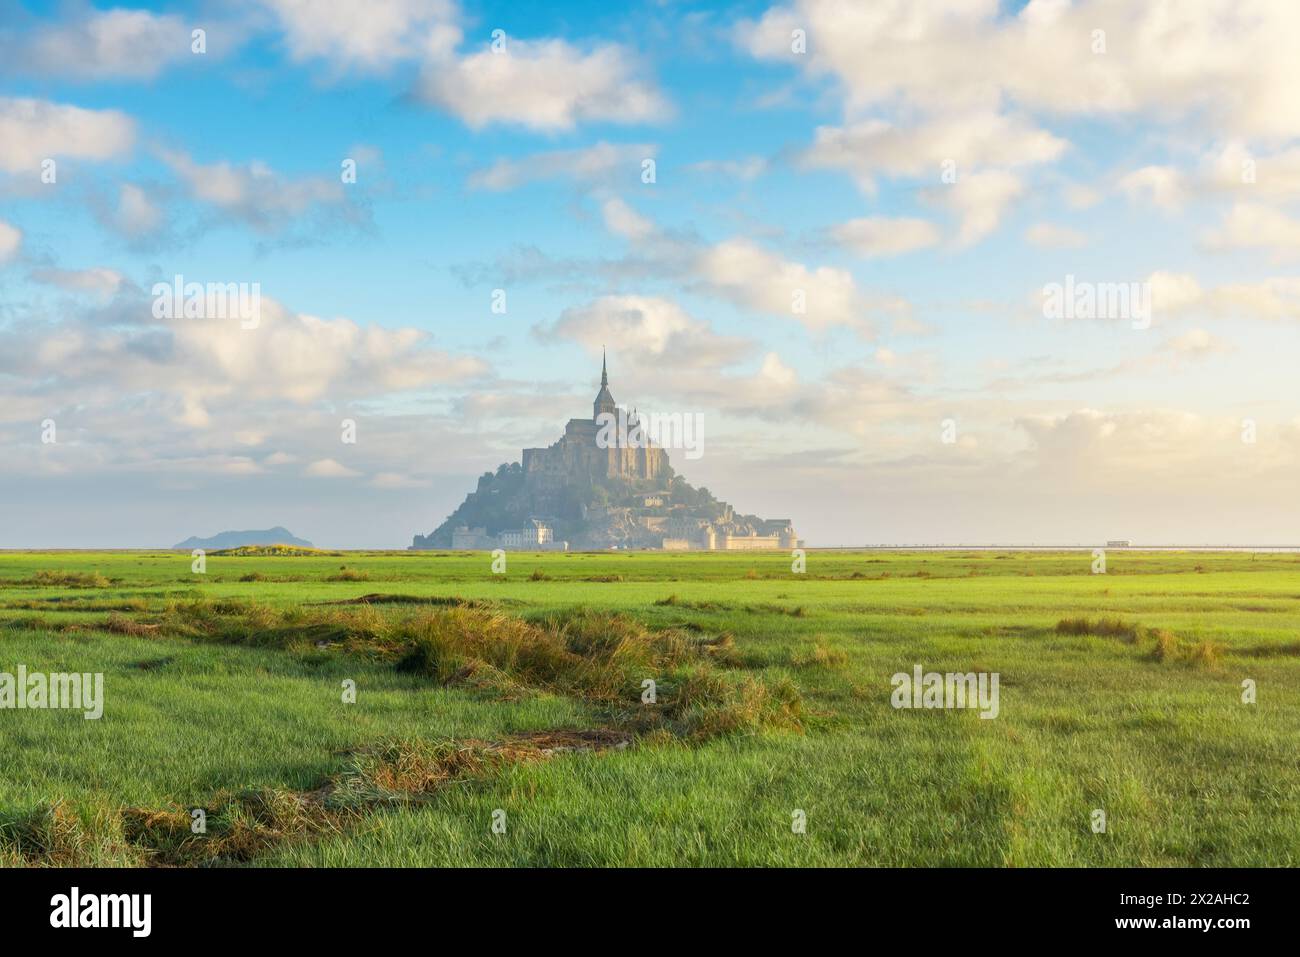 Abbazia di Mont Saint Michel sull'isola con prato verde all'alba, Normandia, Francia settentrionale, Europa. Isola di marea con cattedrale gotica medievale in Foto Stock